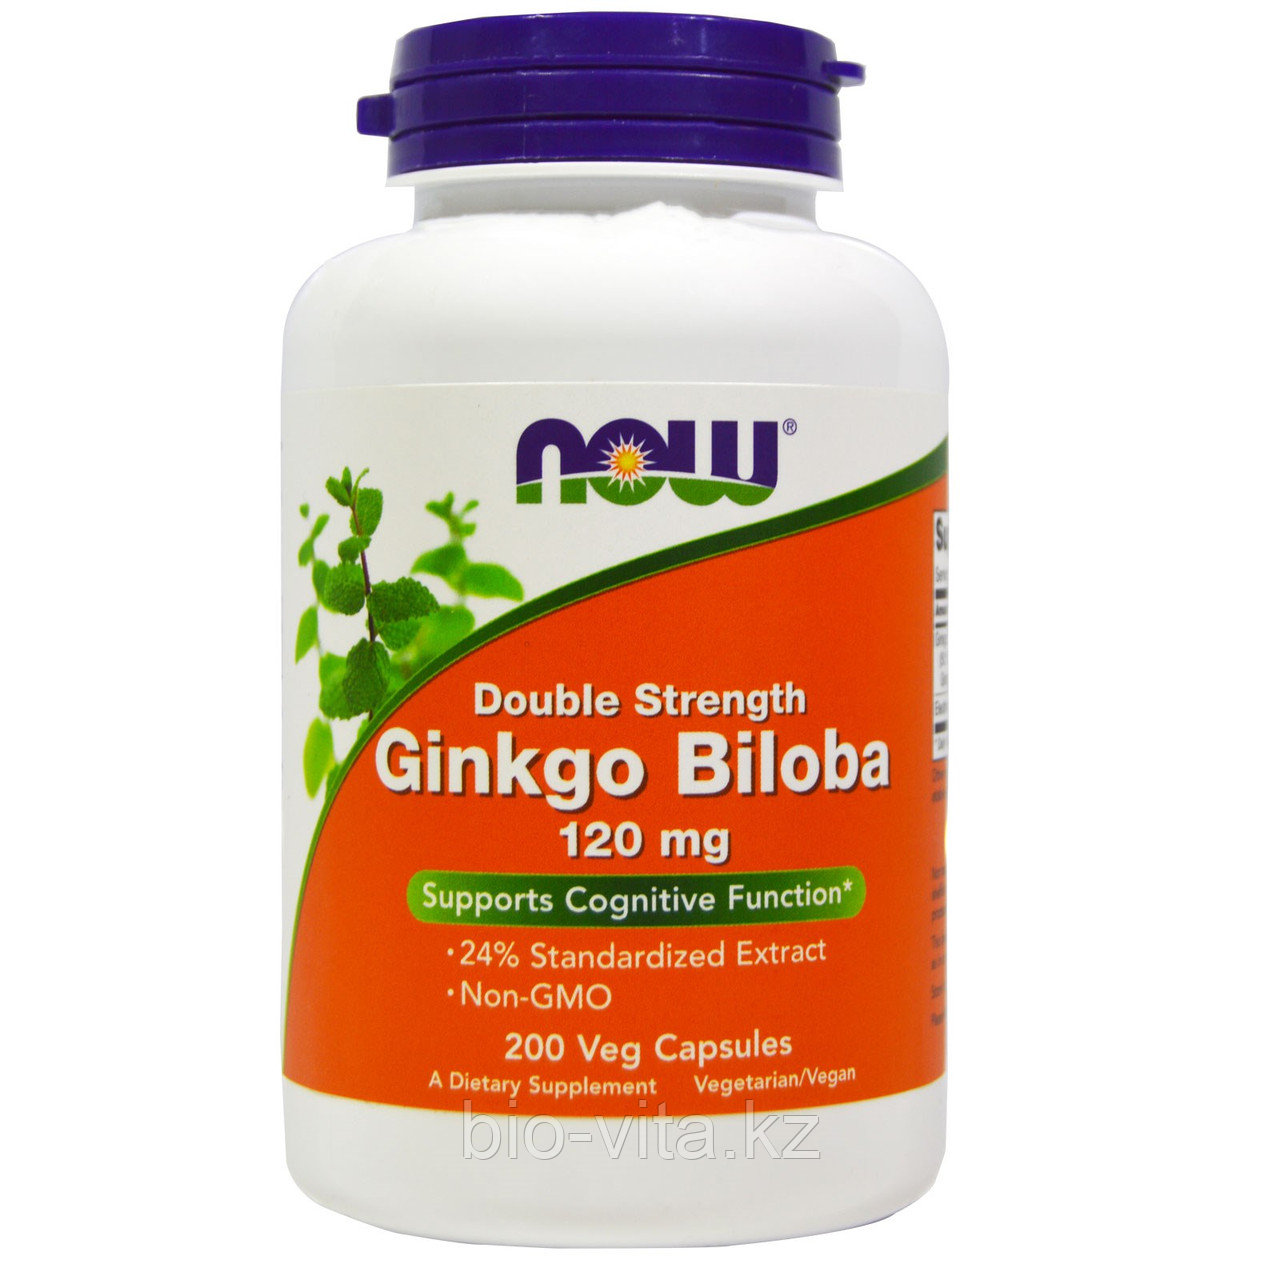 Гинкго билоба  Ginkgo Biloba,120 mg, 200 капсул.